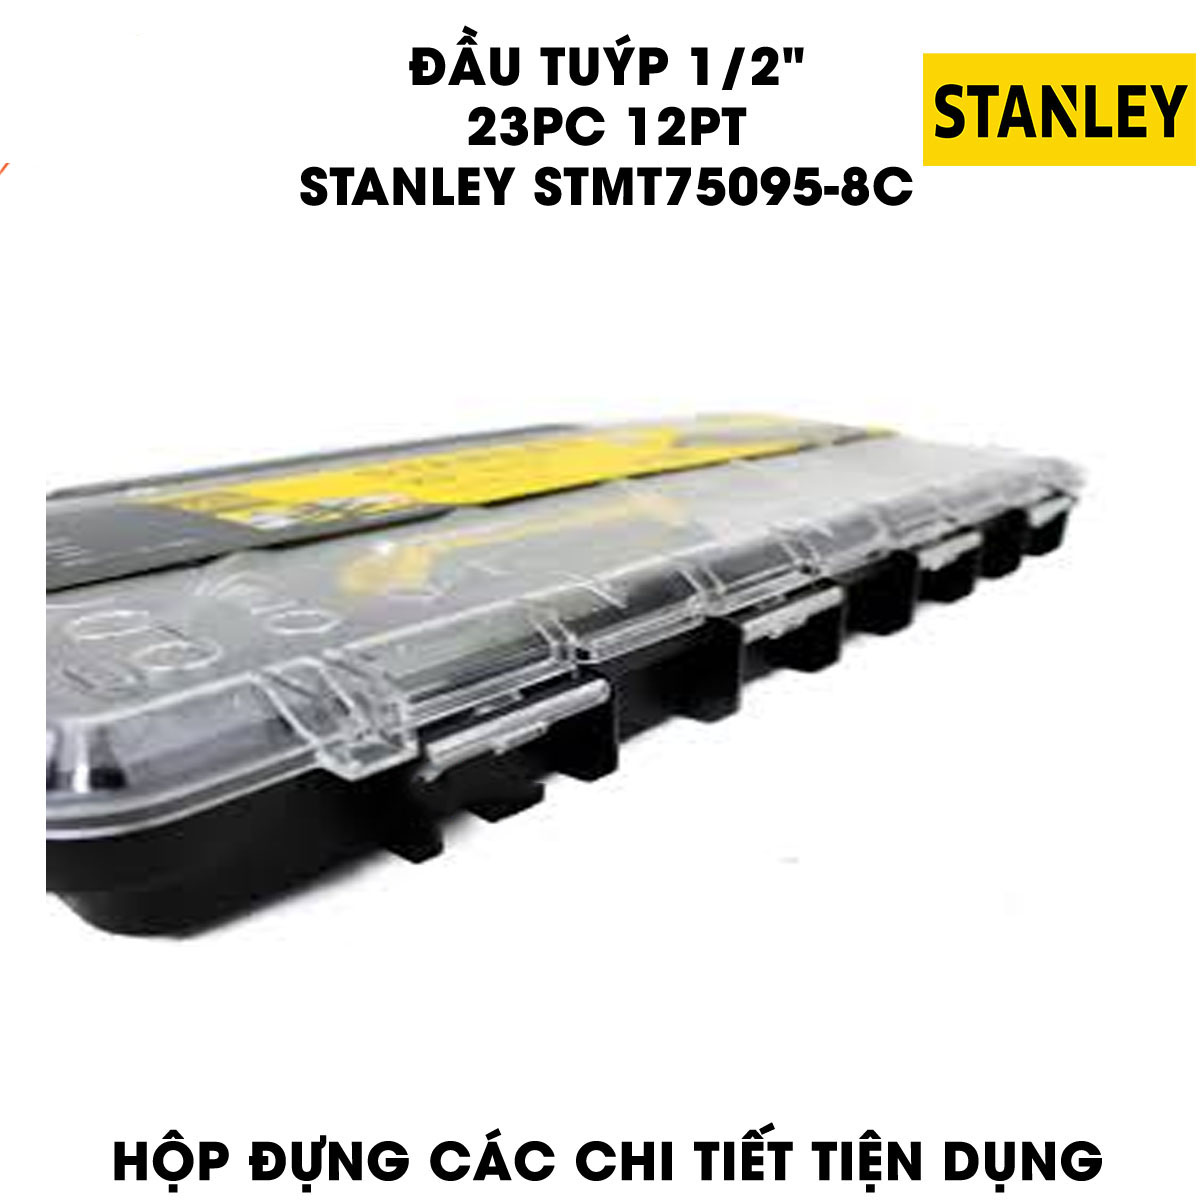 Hình ảnh 3 của mặt hàng Đầu tuýp 1/2" 12PT 23 chi tiết Stanley STMT75095-8C